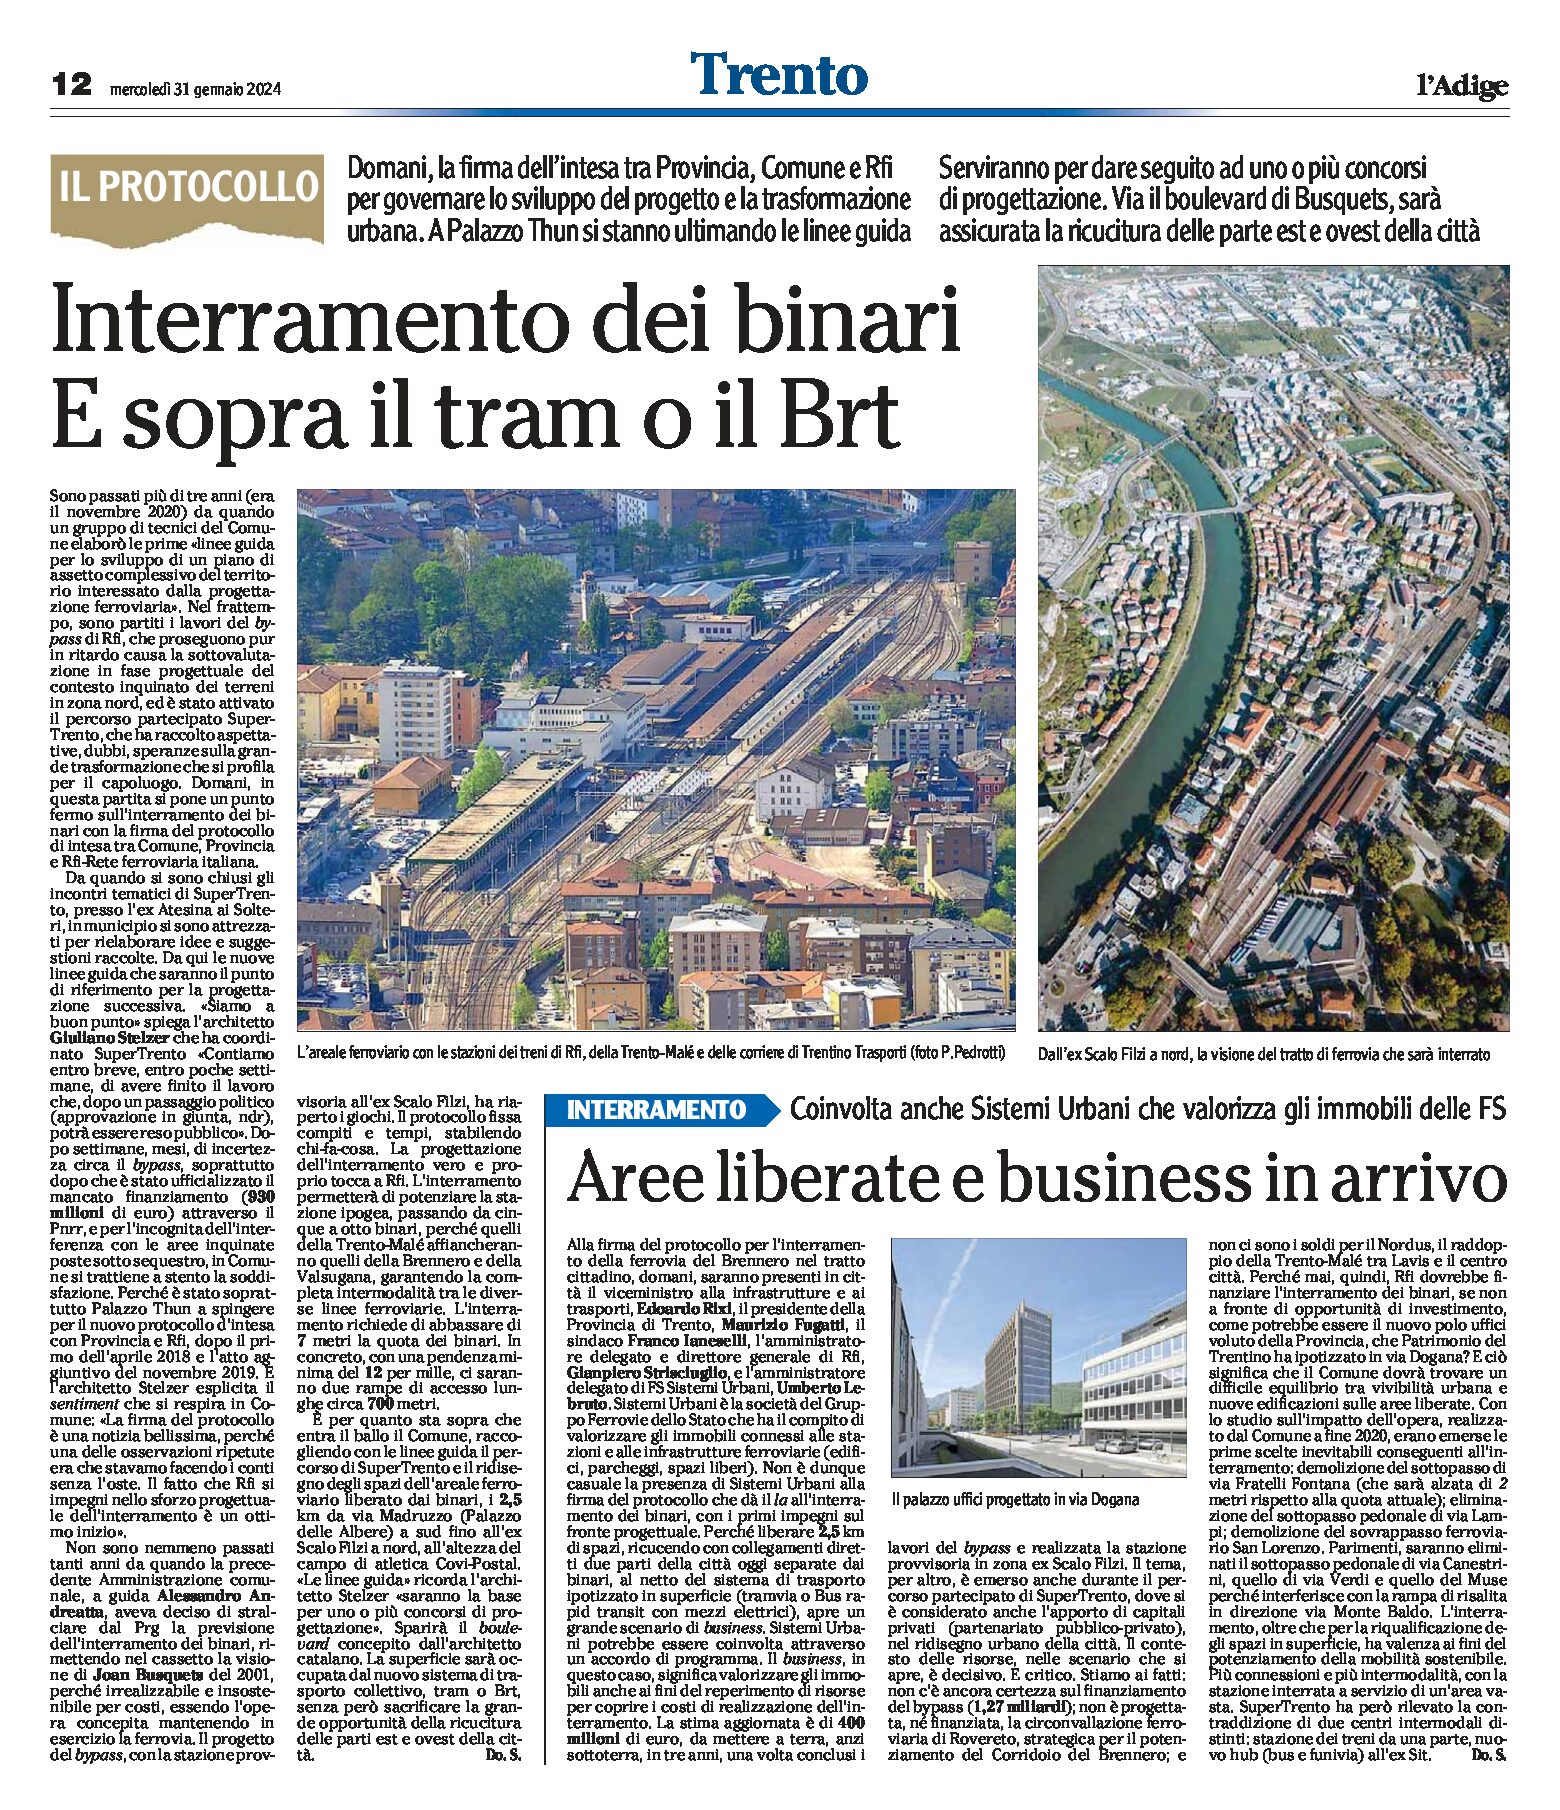 Trento: interramento dei binari, e sopra il tram o il Brt